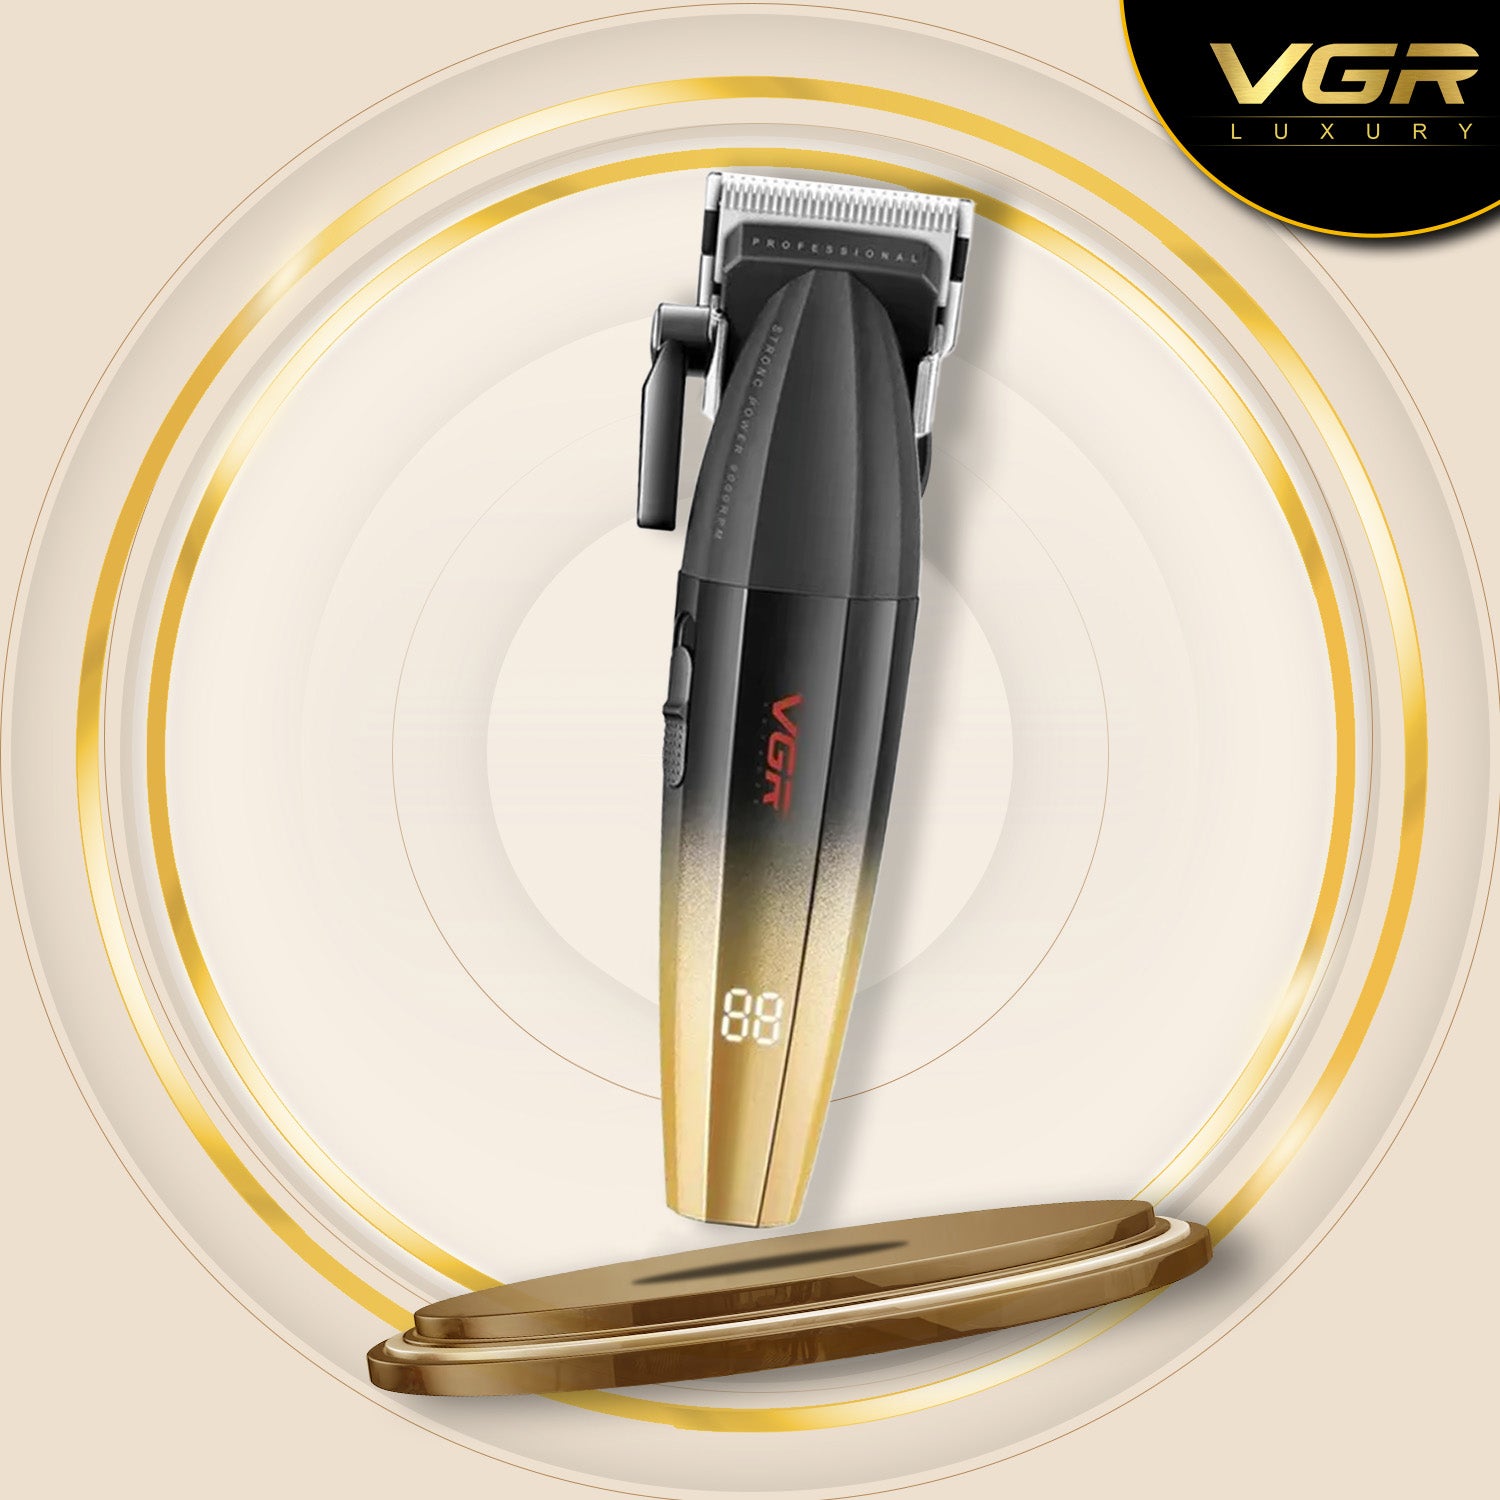 VGR V-003 Professional Hair Clipper For Men, (Black/gold)